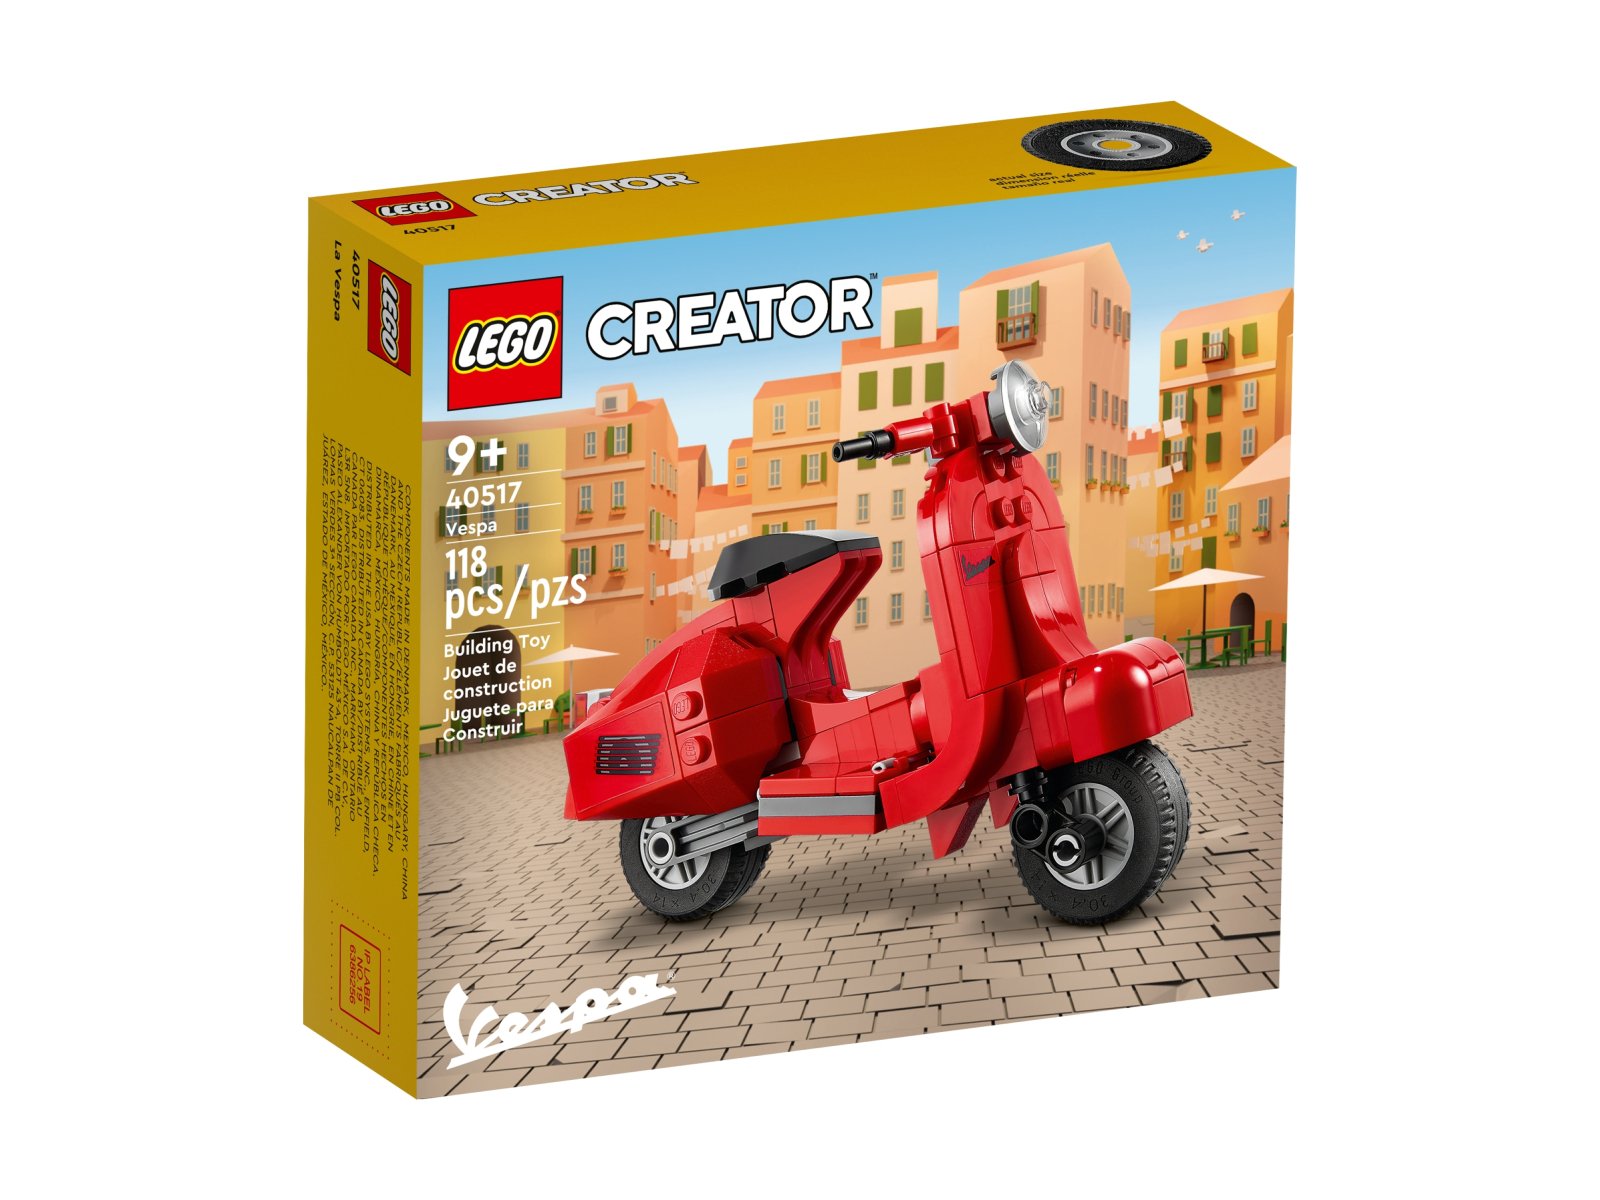 LEGO 40517 Creator Vespa